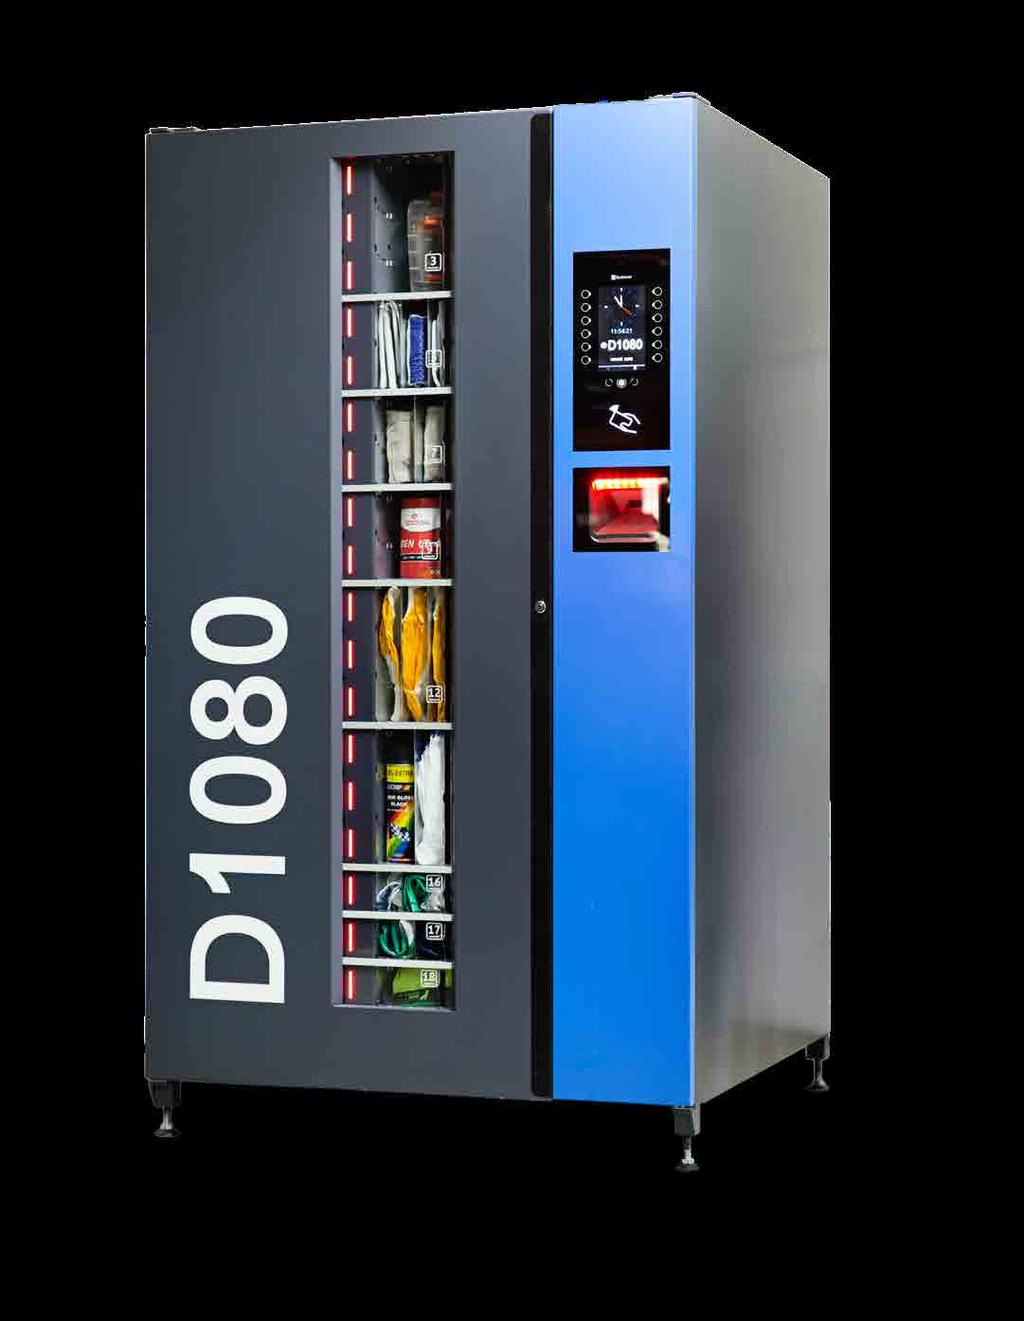 Automat D1080 jest samoobsługową maszyną, automatycznie wydającą do 1080 różnych produktów.